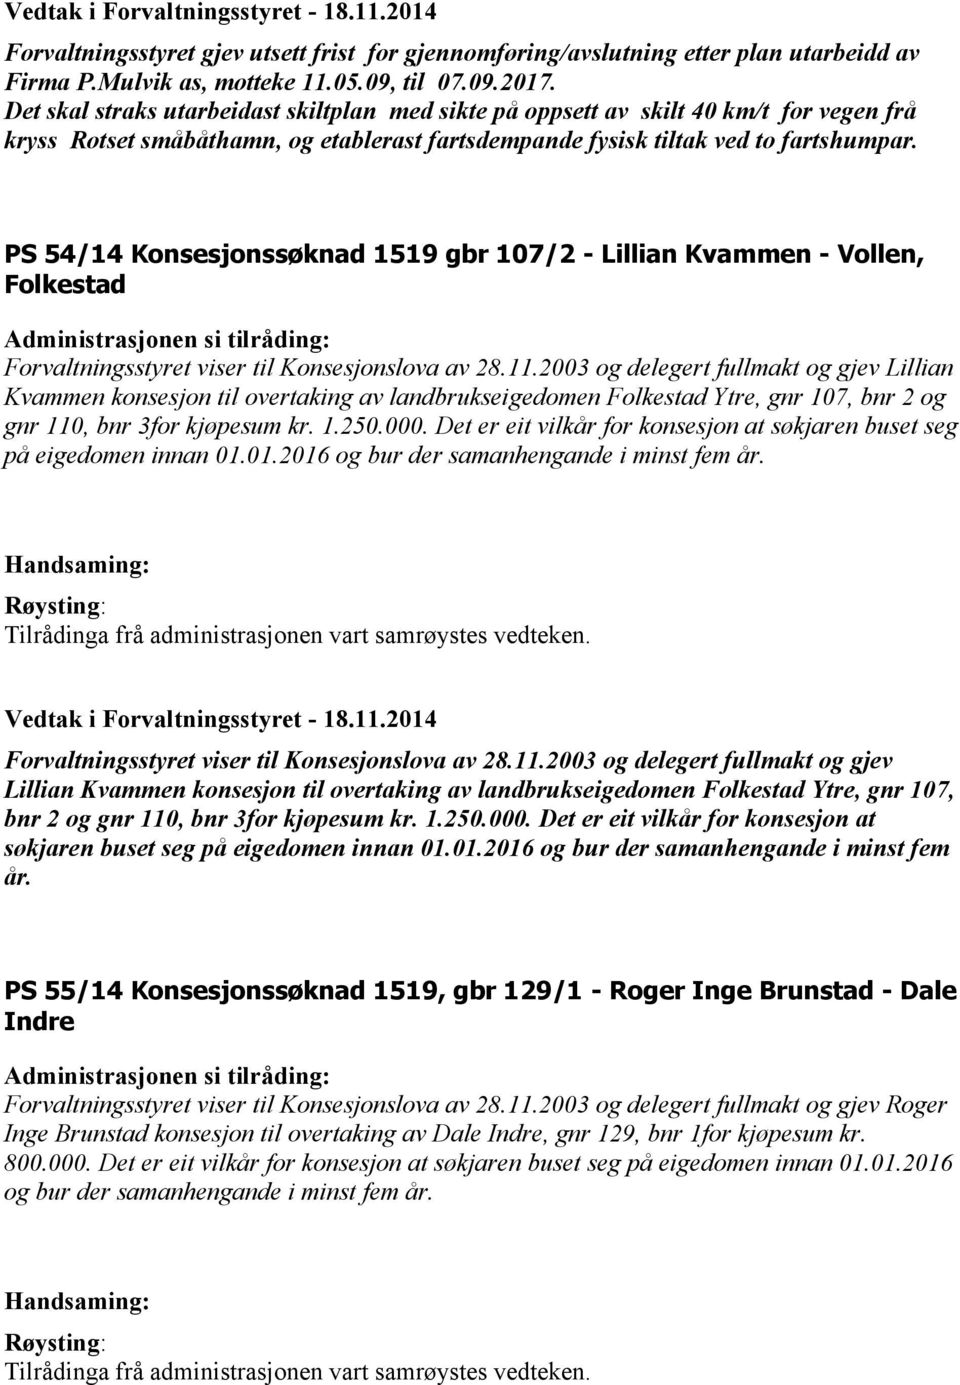 PS 54/14 Konsesjonssøknad 1519 gbr 107/2 - Lillian Kvammen - Vollen, Folkestad Forvaltningsstyret viser til Konsesjonslova av 28.11.